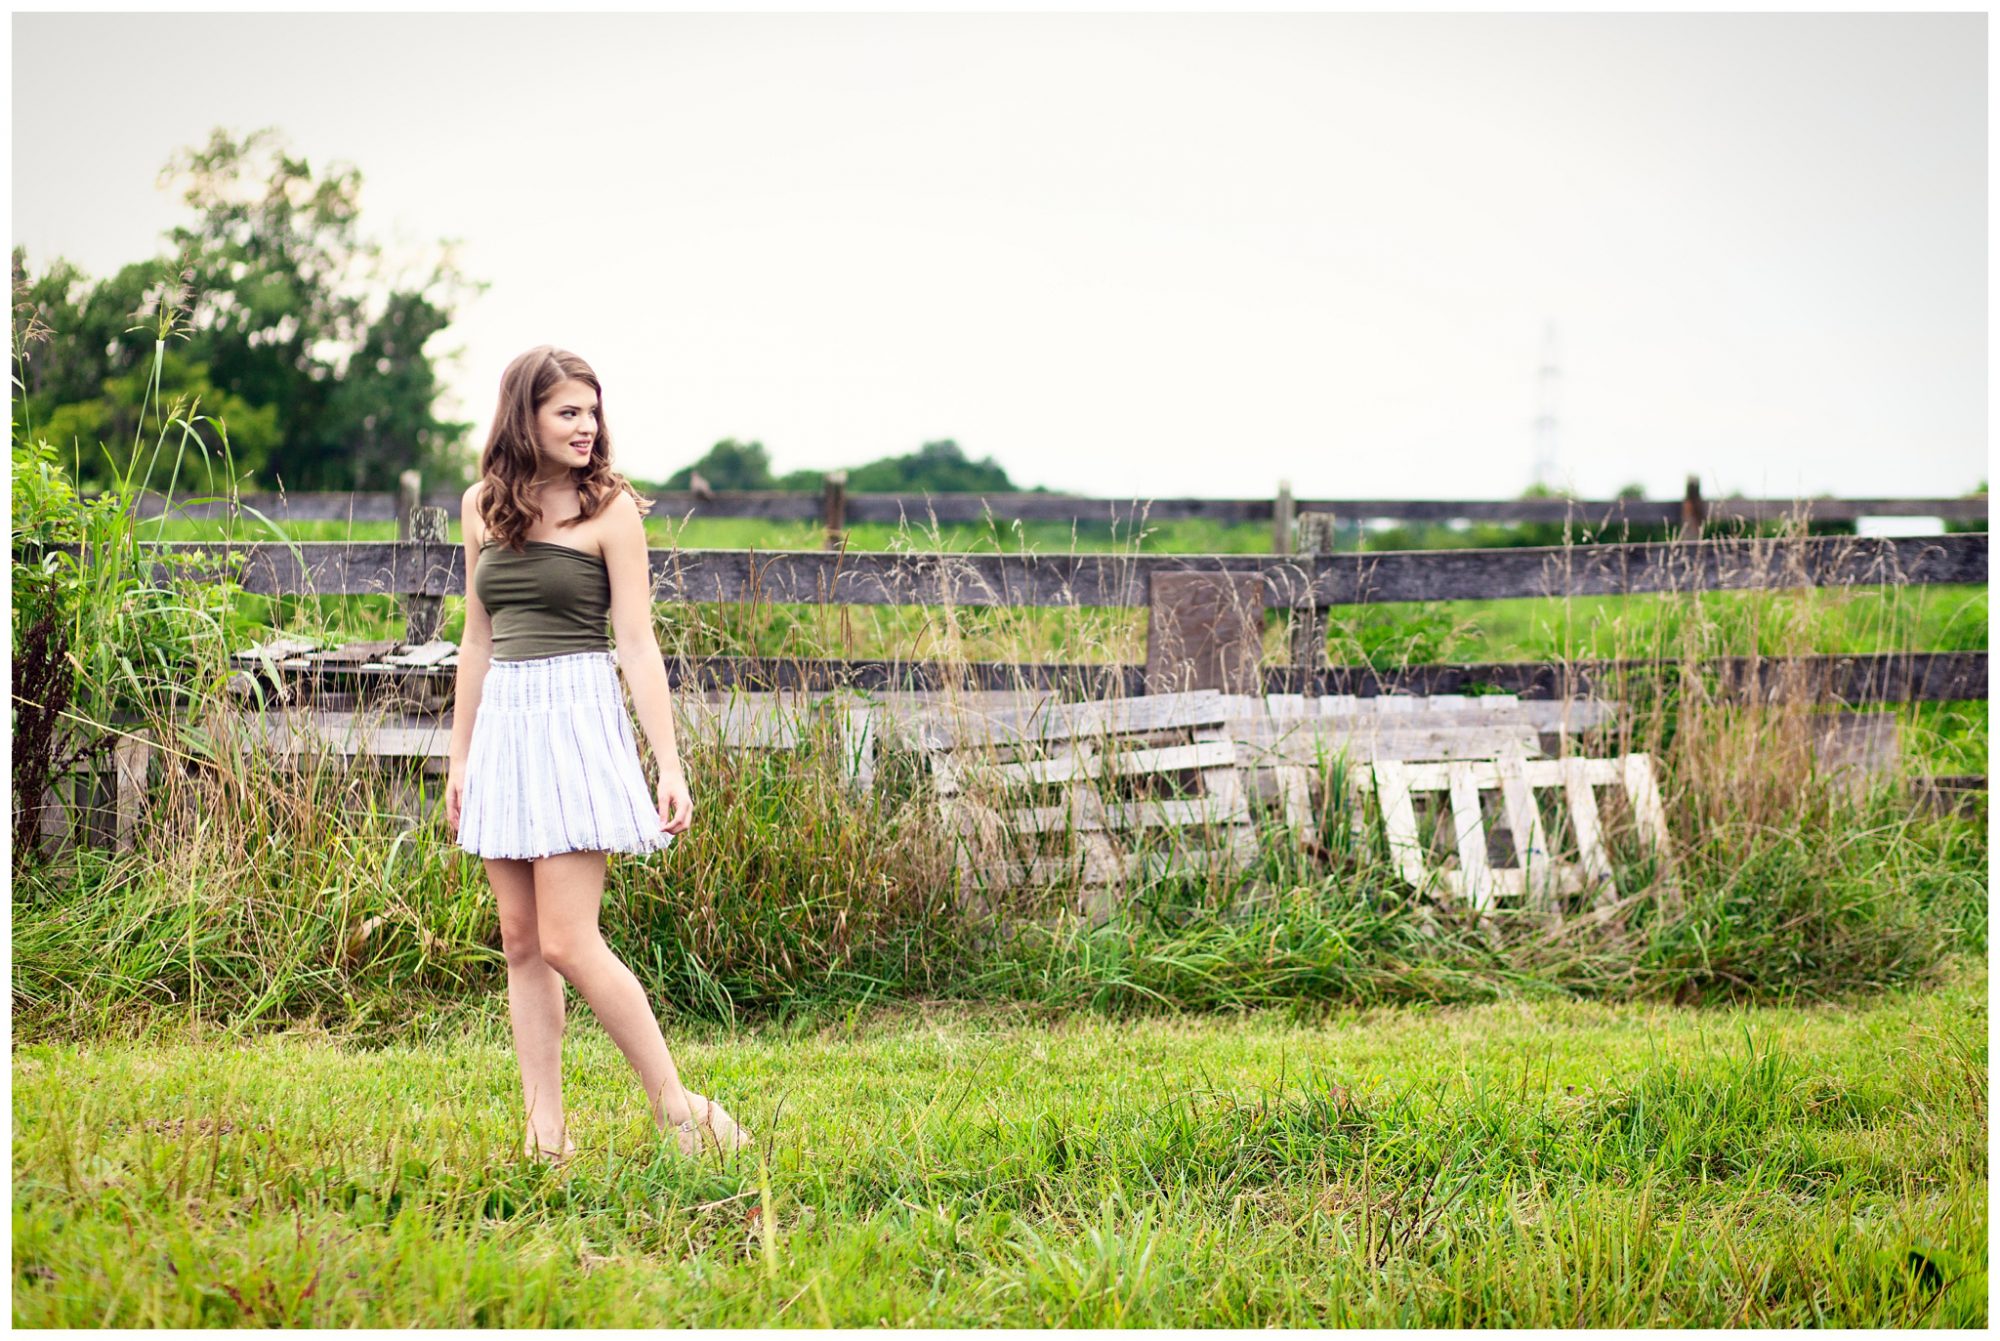 Senior girl in green shirt white skirt standing in open field